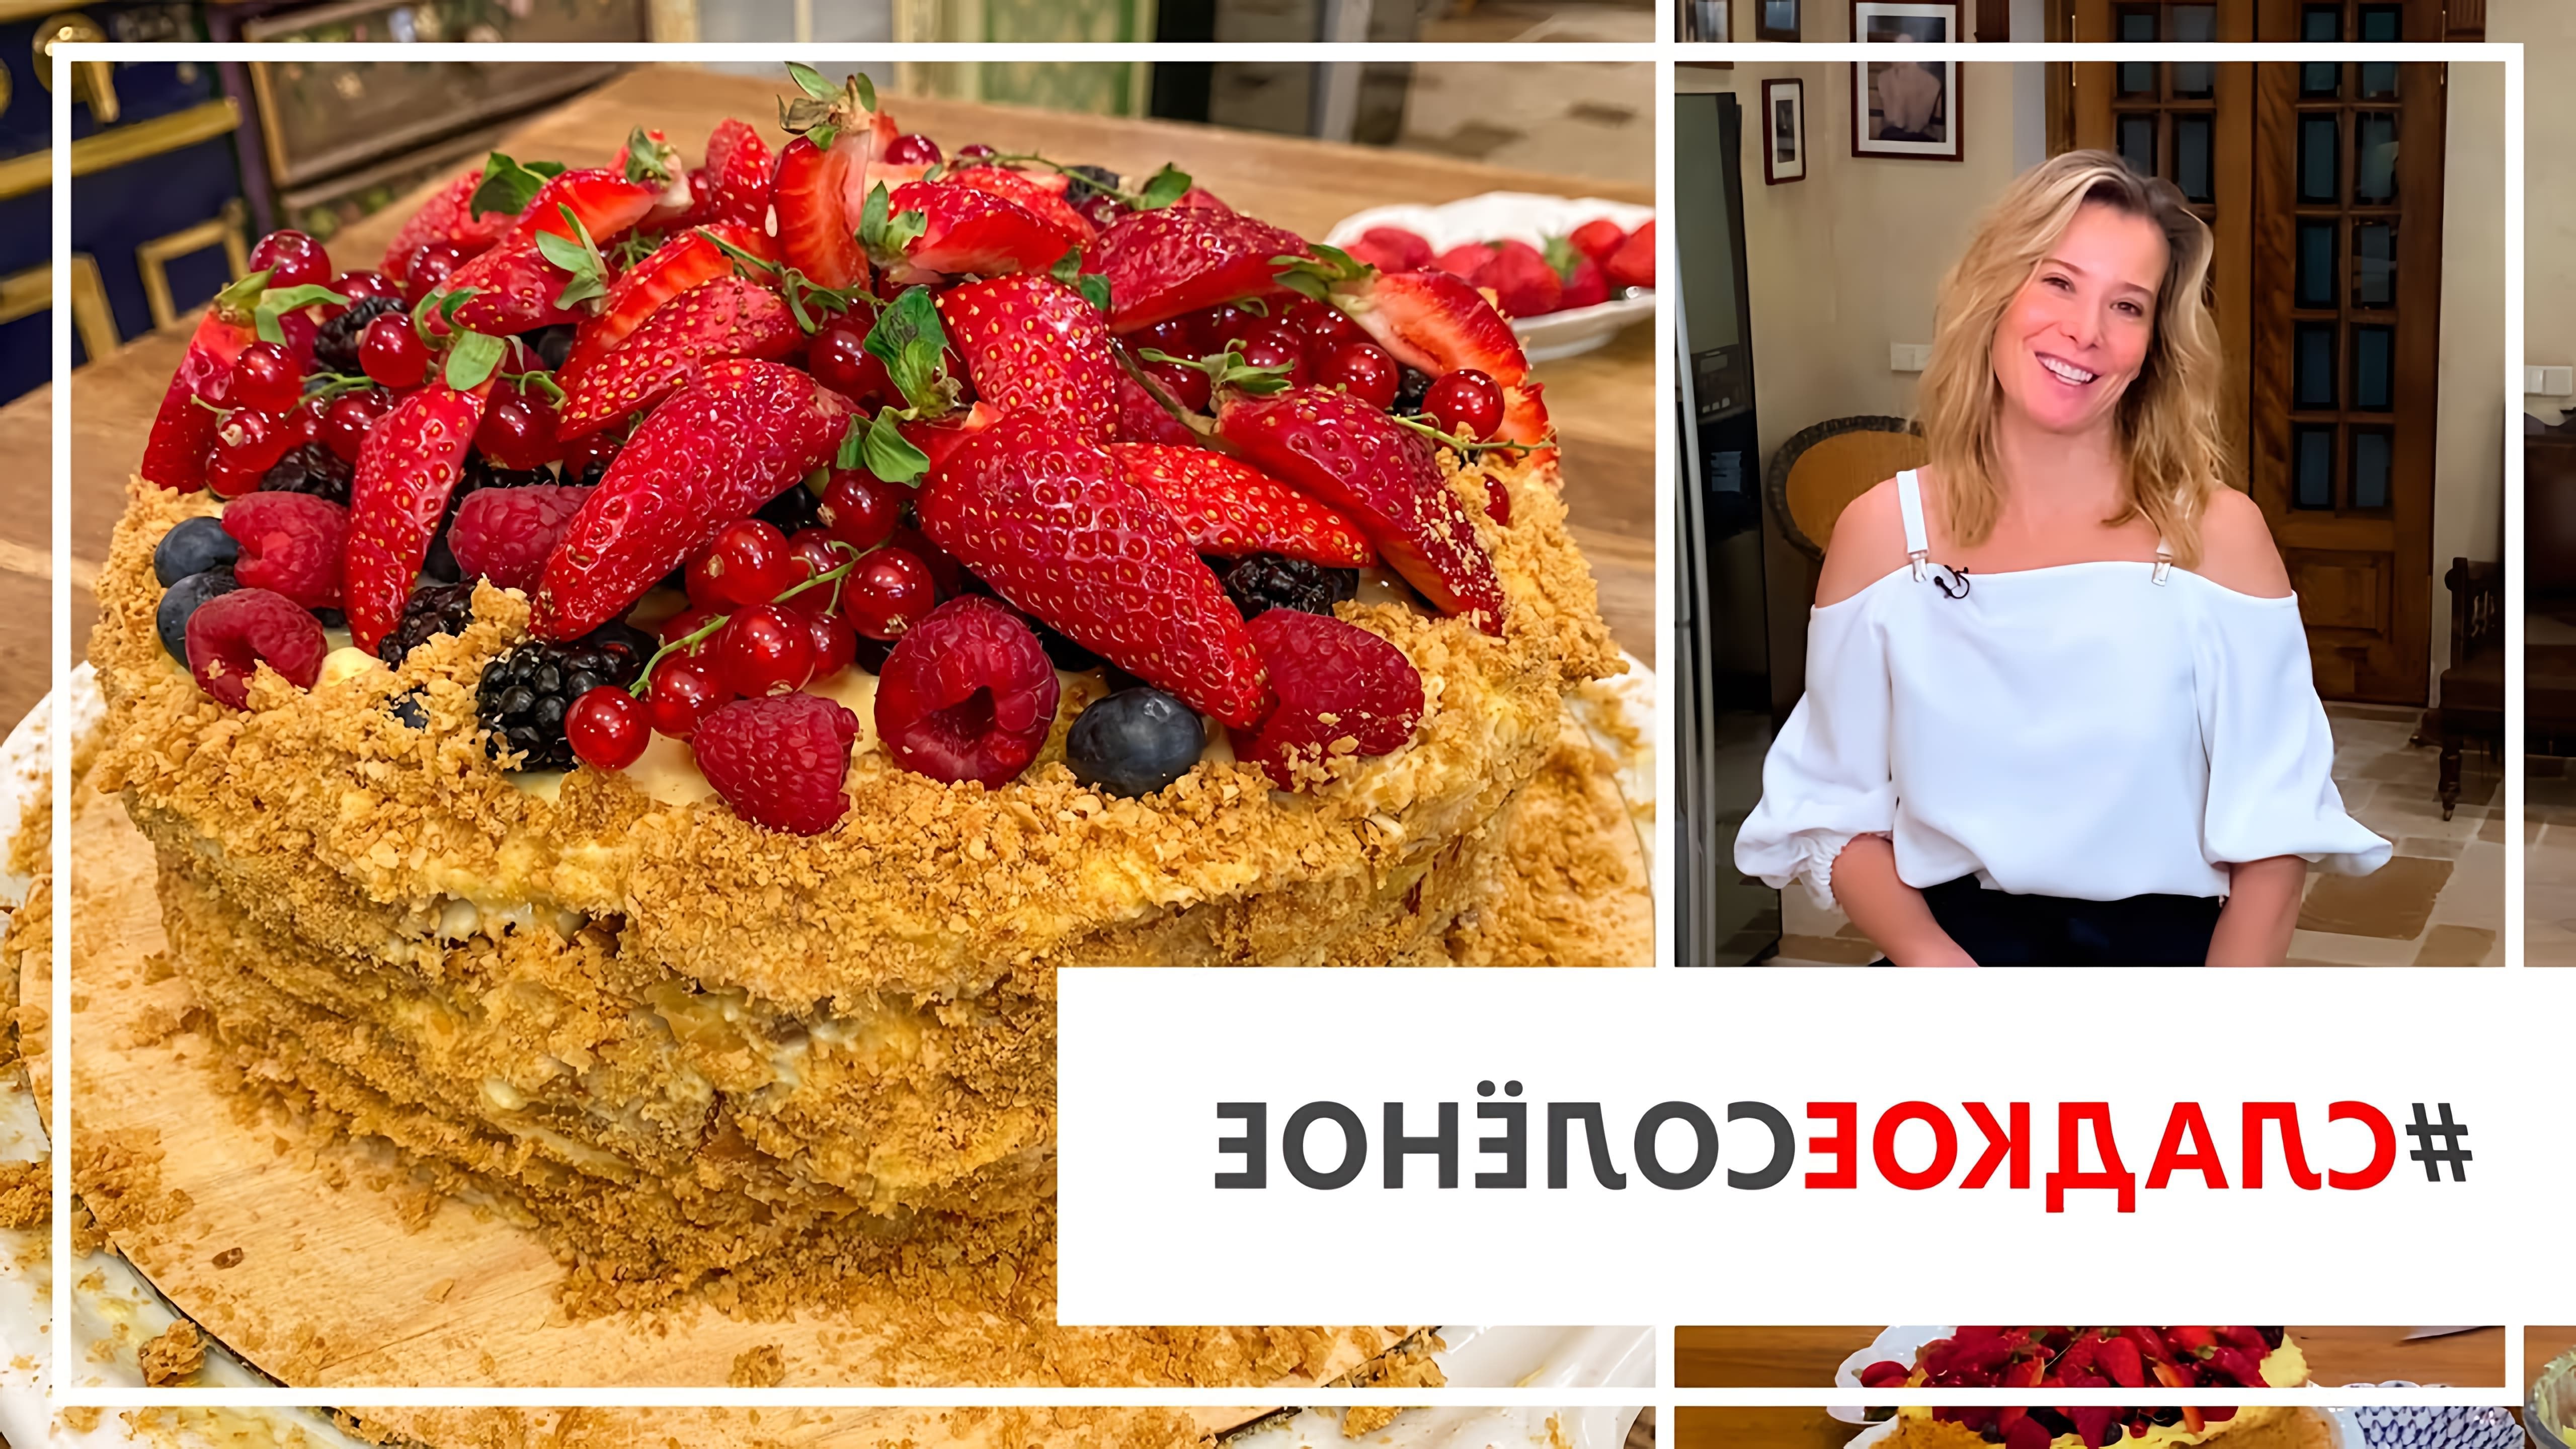 В этом видео Юлия Высоцкая показывает рецепт домашнего торта "Наполеон" с ягодами и кремом